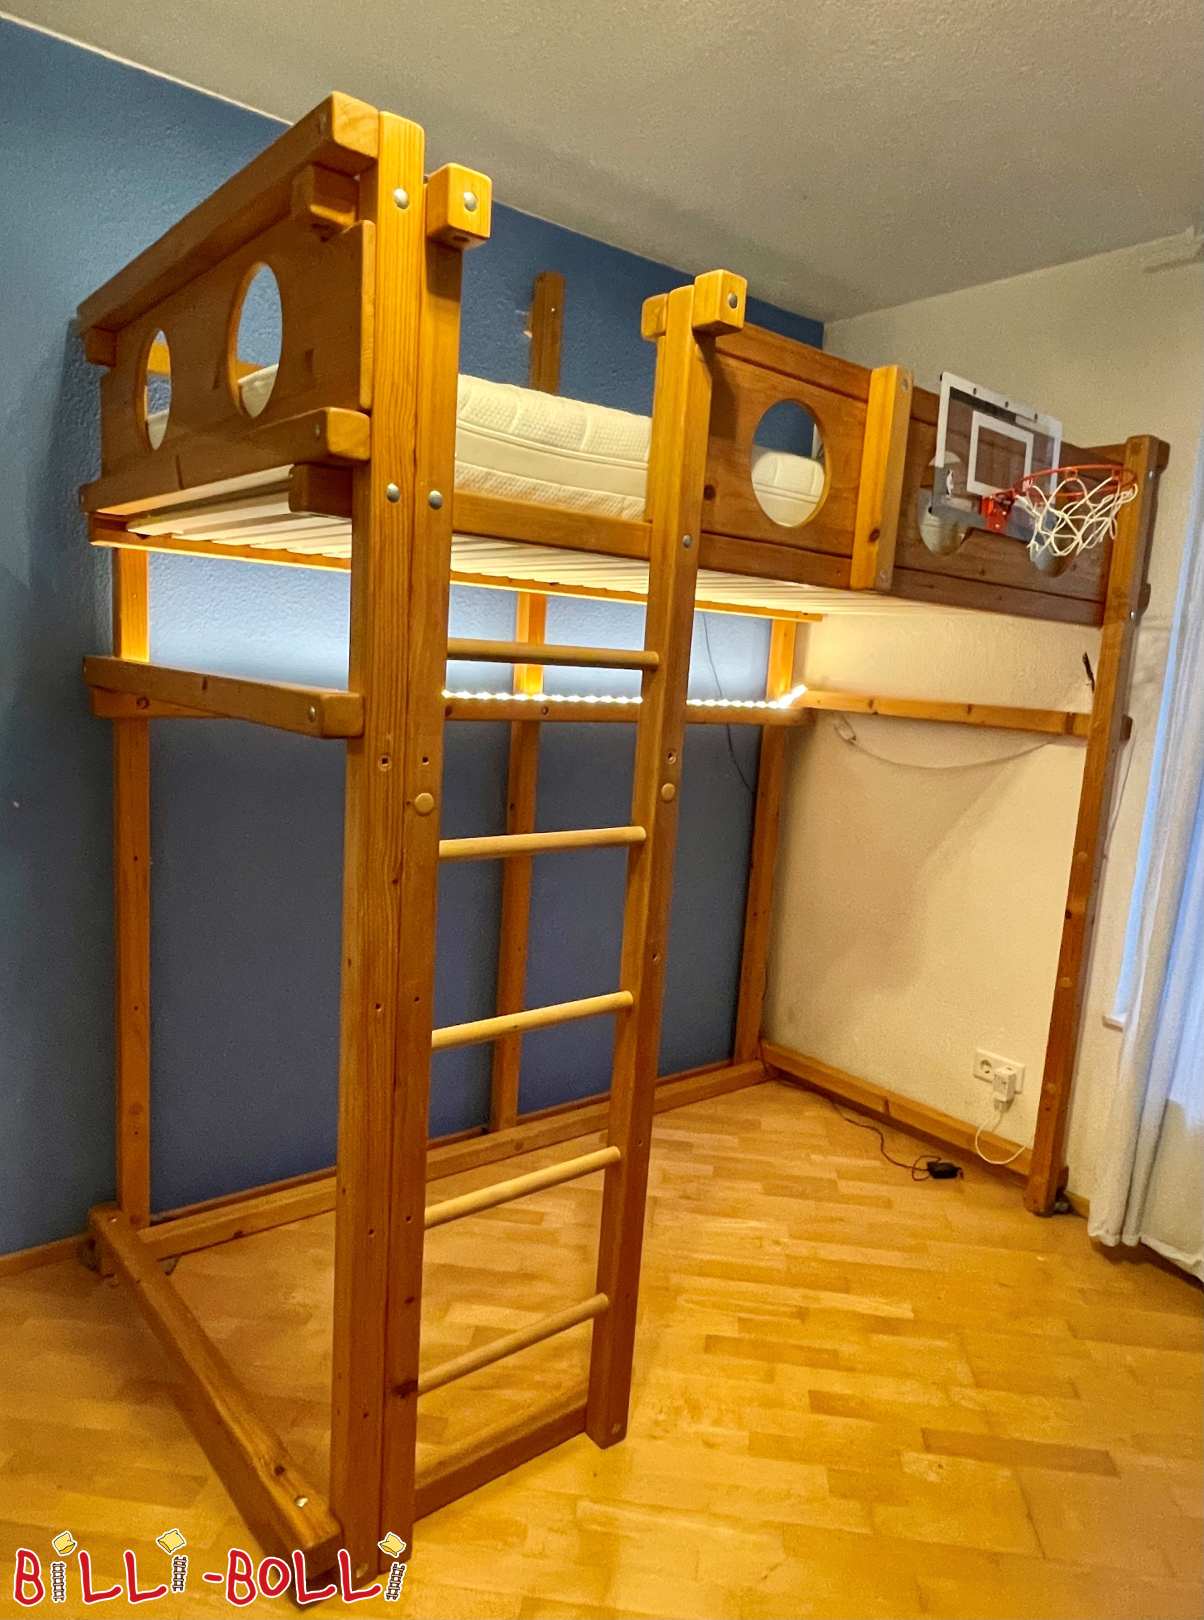 Ladin çatı katı yatak çocuk ile büyüyen 100x200cm (Kategori: Çocukla birlikte büyüyen çatı katı yatağı kullanılmış)